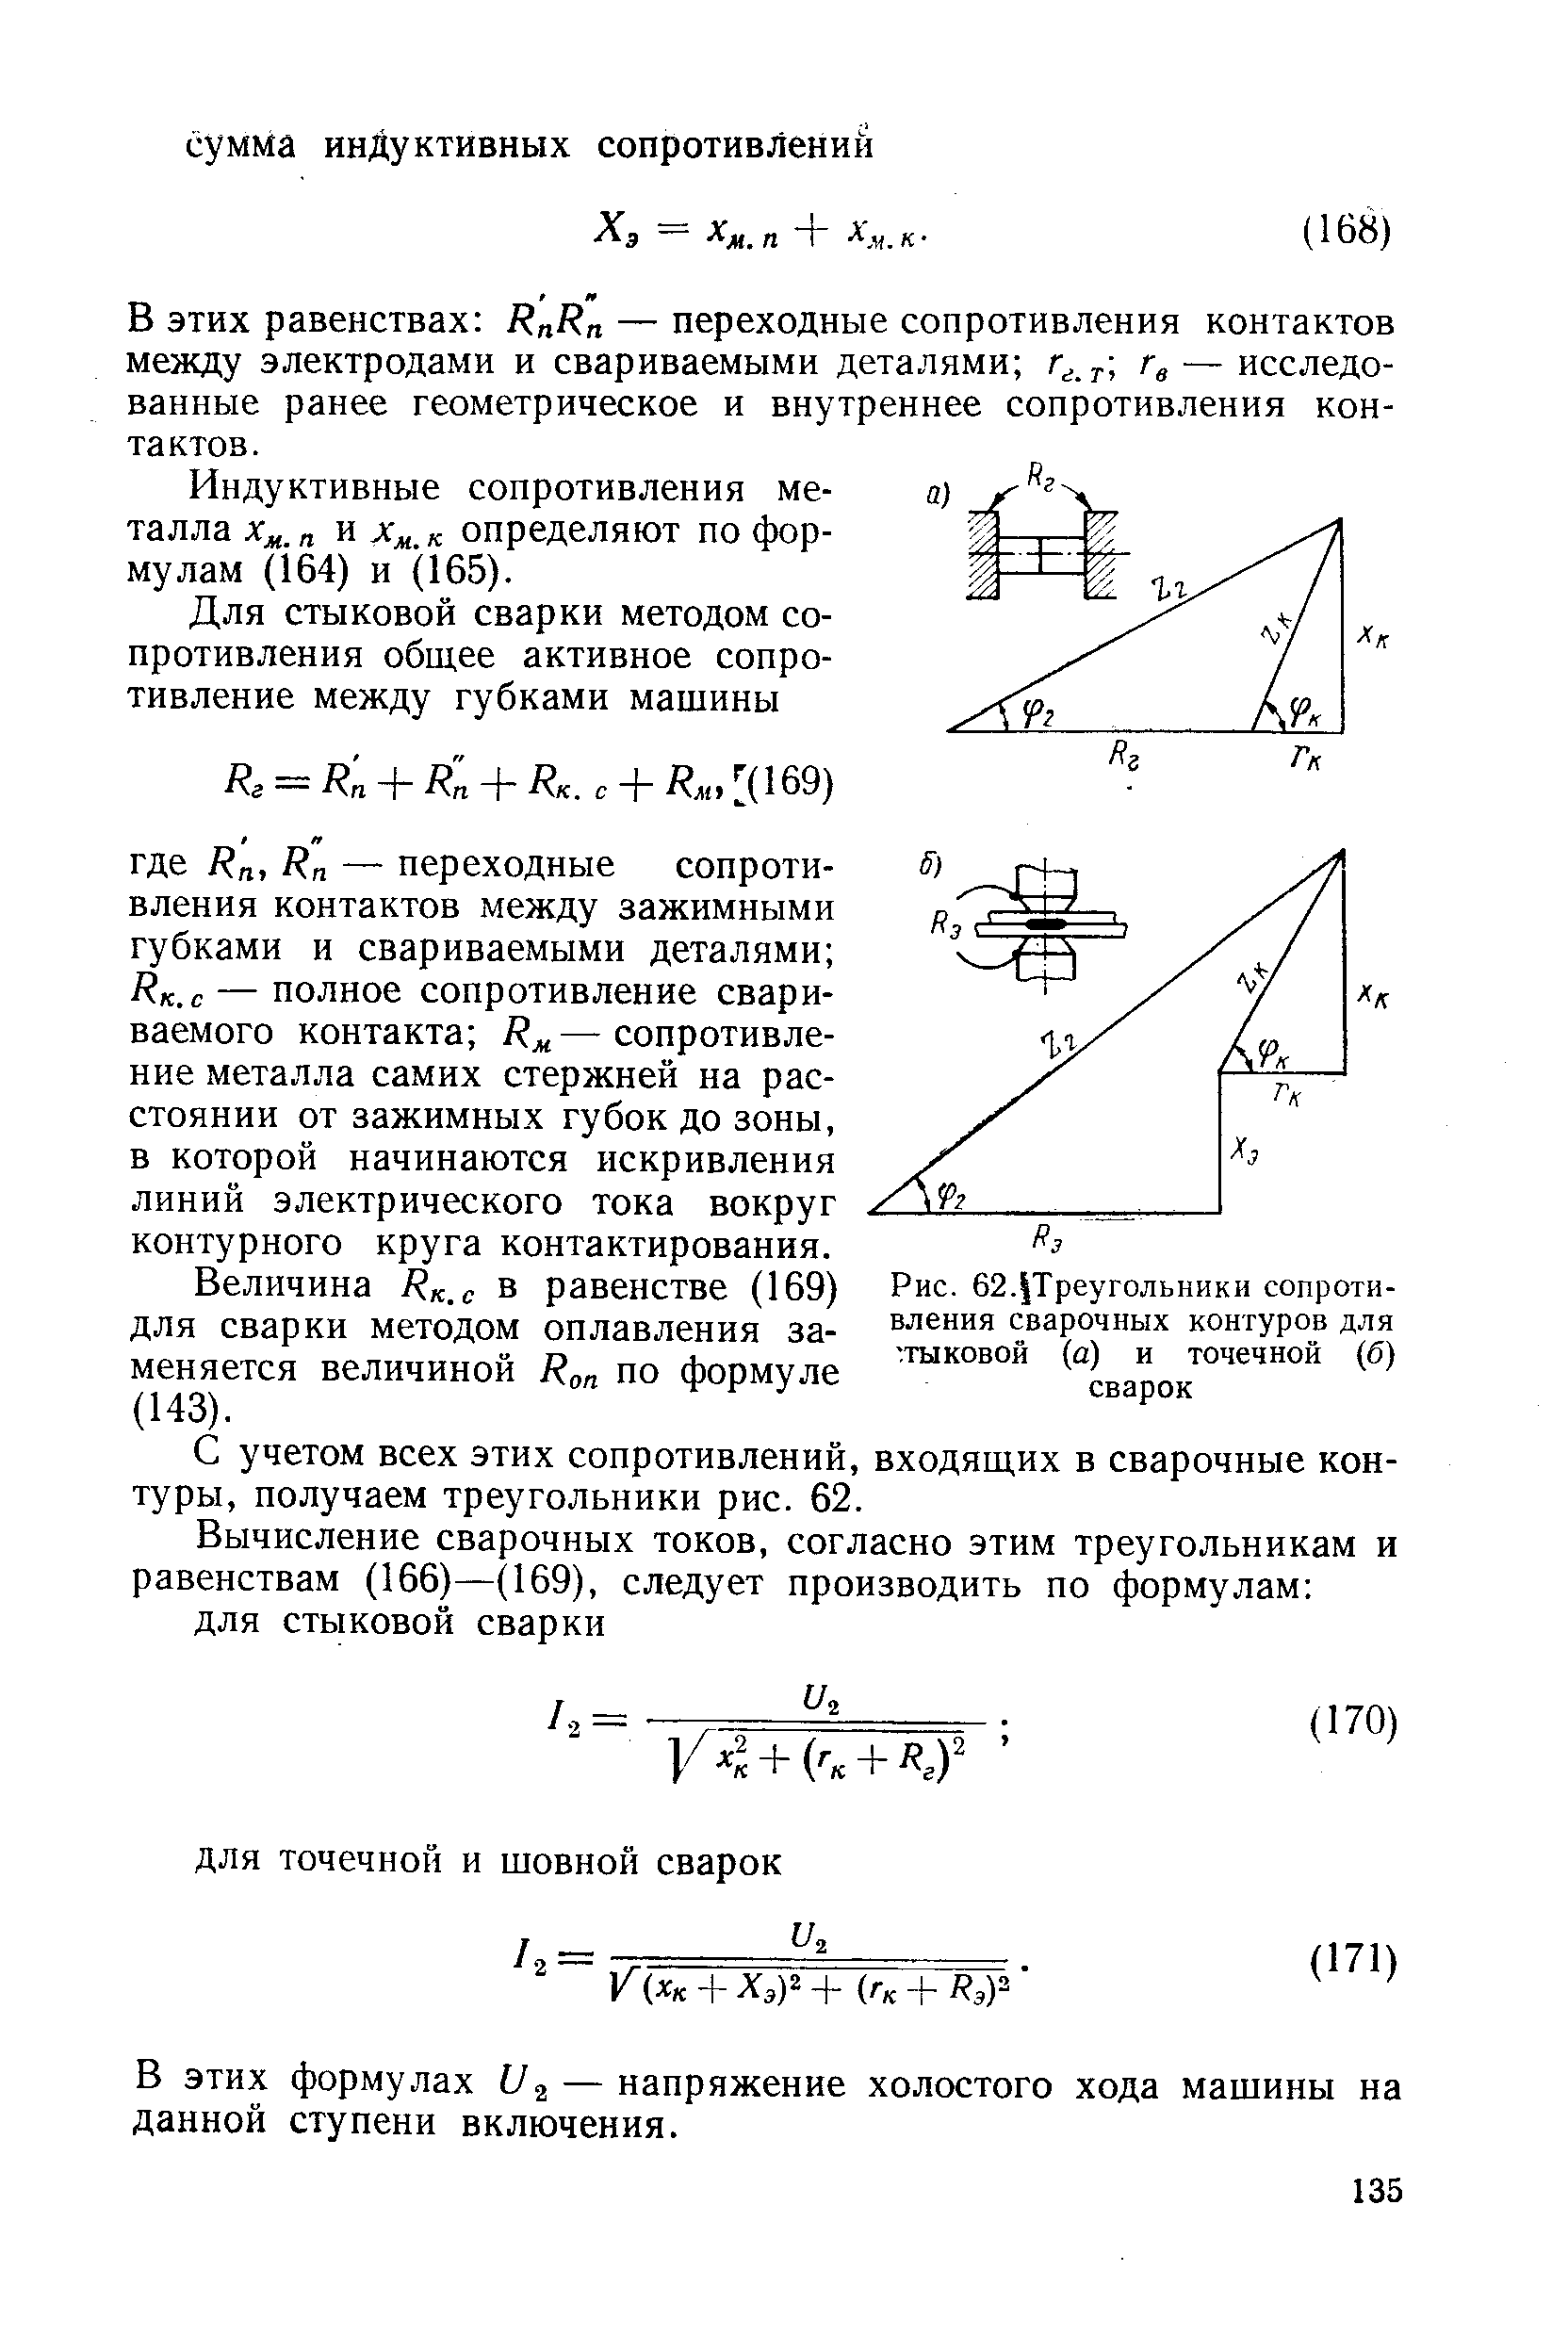 Рис. 62. Треугольники сопротивления сварочных контуров для стыковой (а) и точечной (б) сварок
